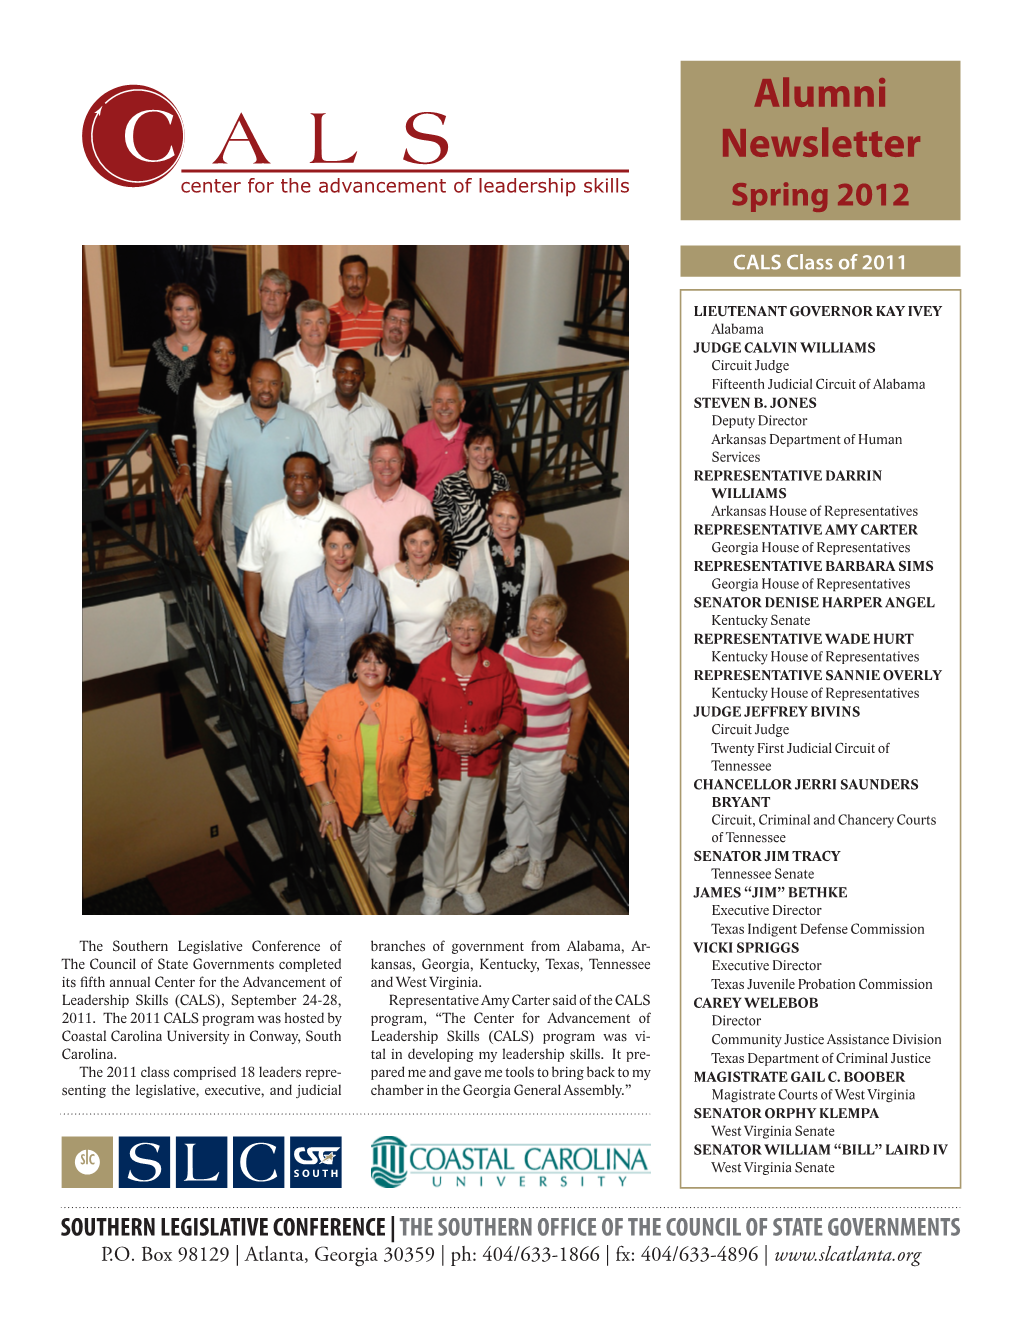 Alumni Newsletter Spring 2012